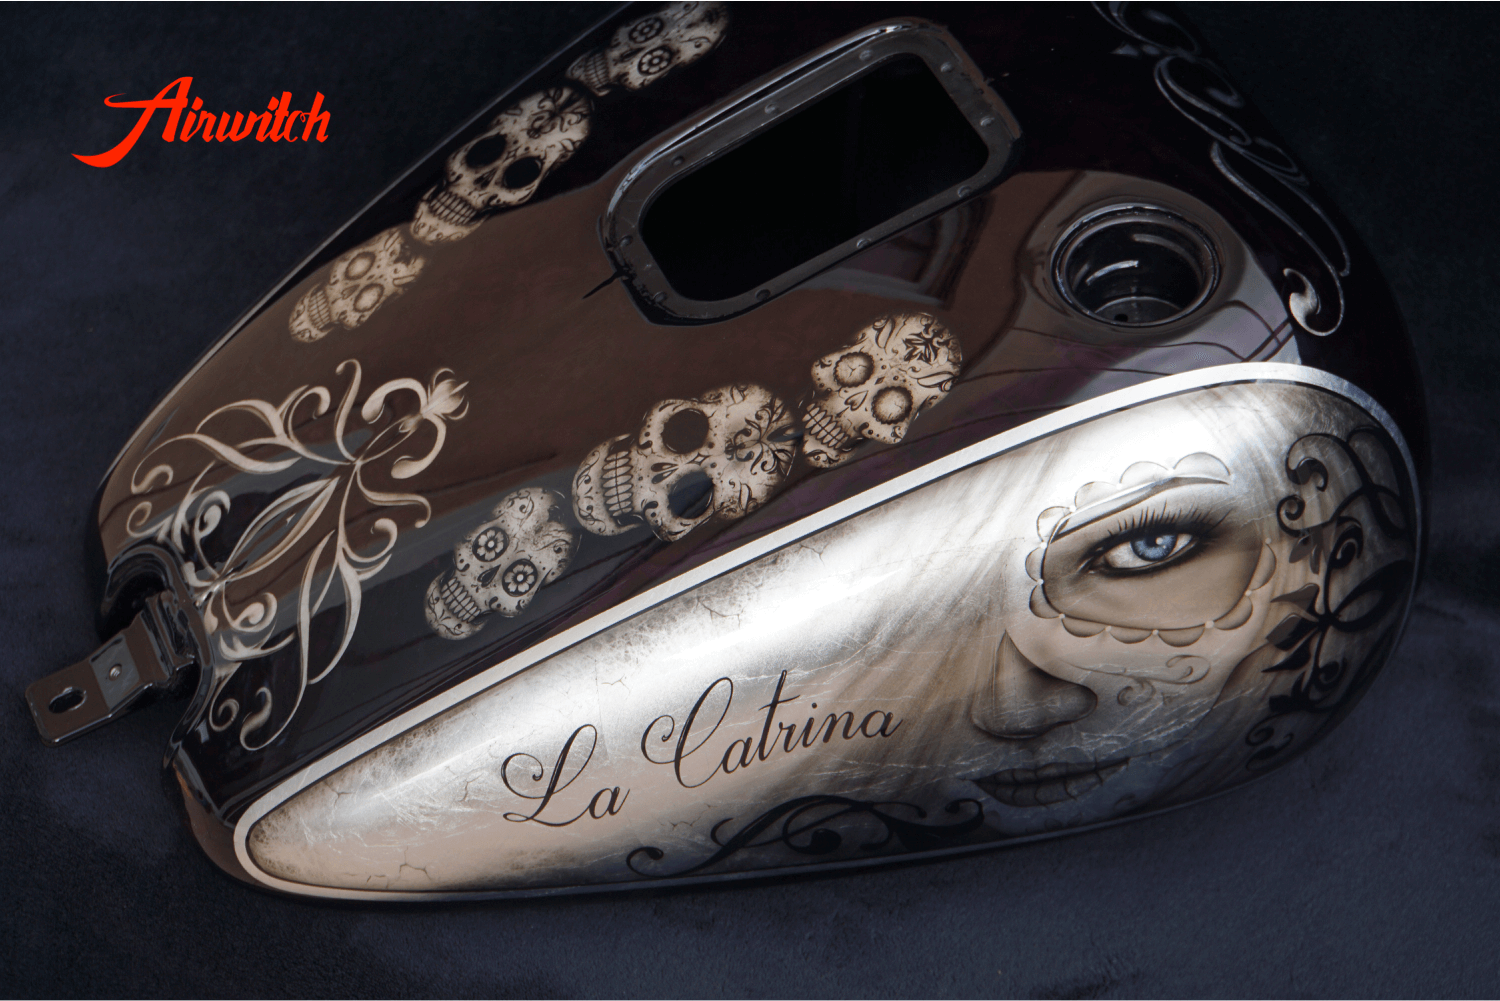 Harley Davidson softail Tank mit Custom Paint Airbrush von La Catrina und Sugar Skulls auf Bllattsilber von Airwitch